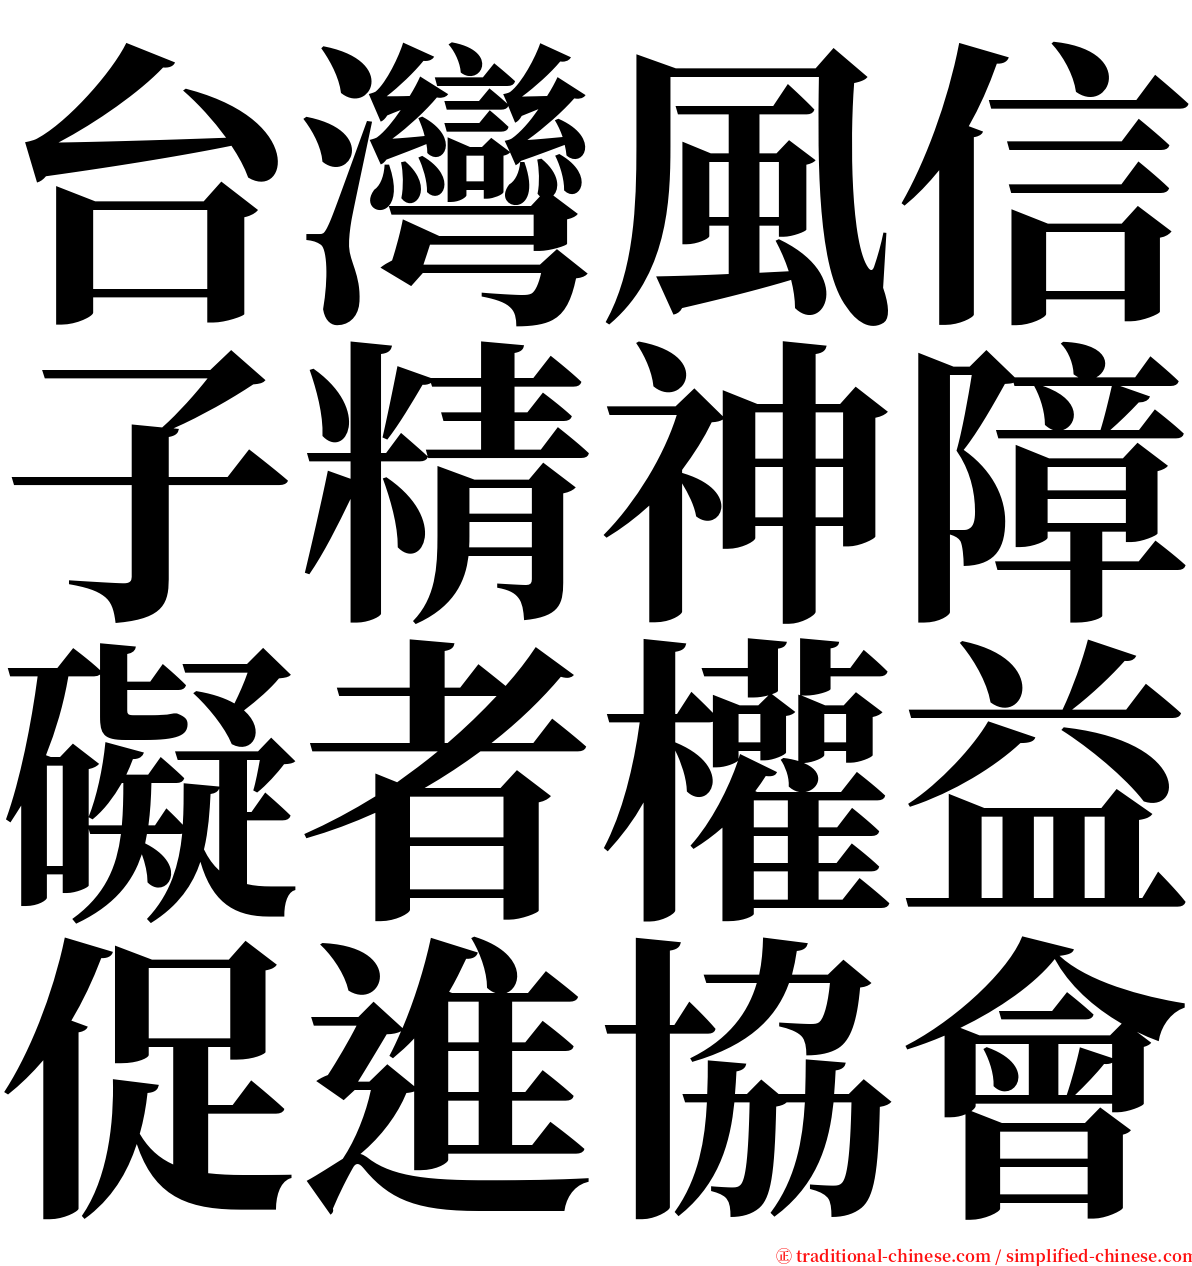 台灣風信子精神障礙者權益促進協會 serif font